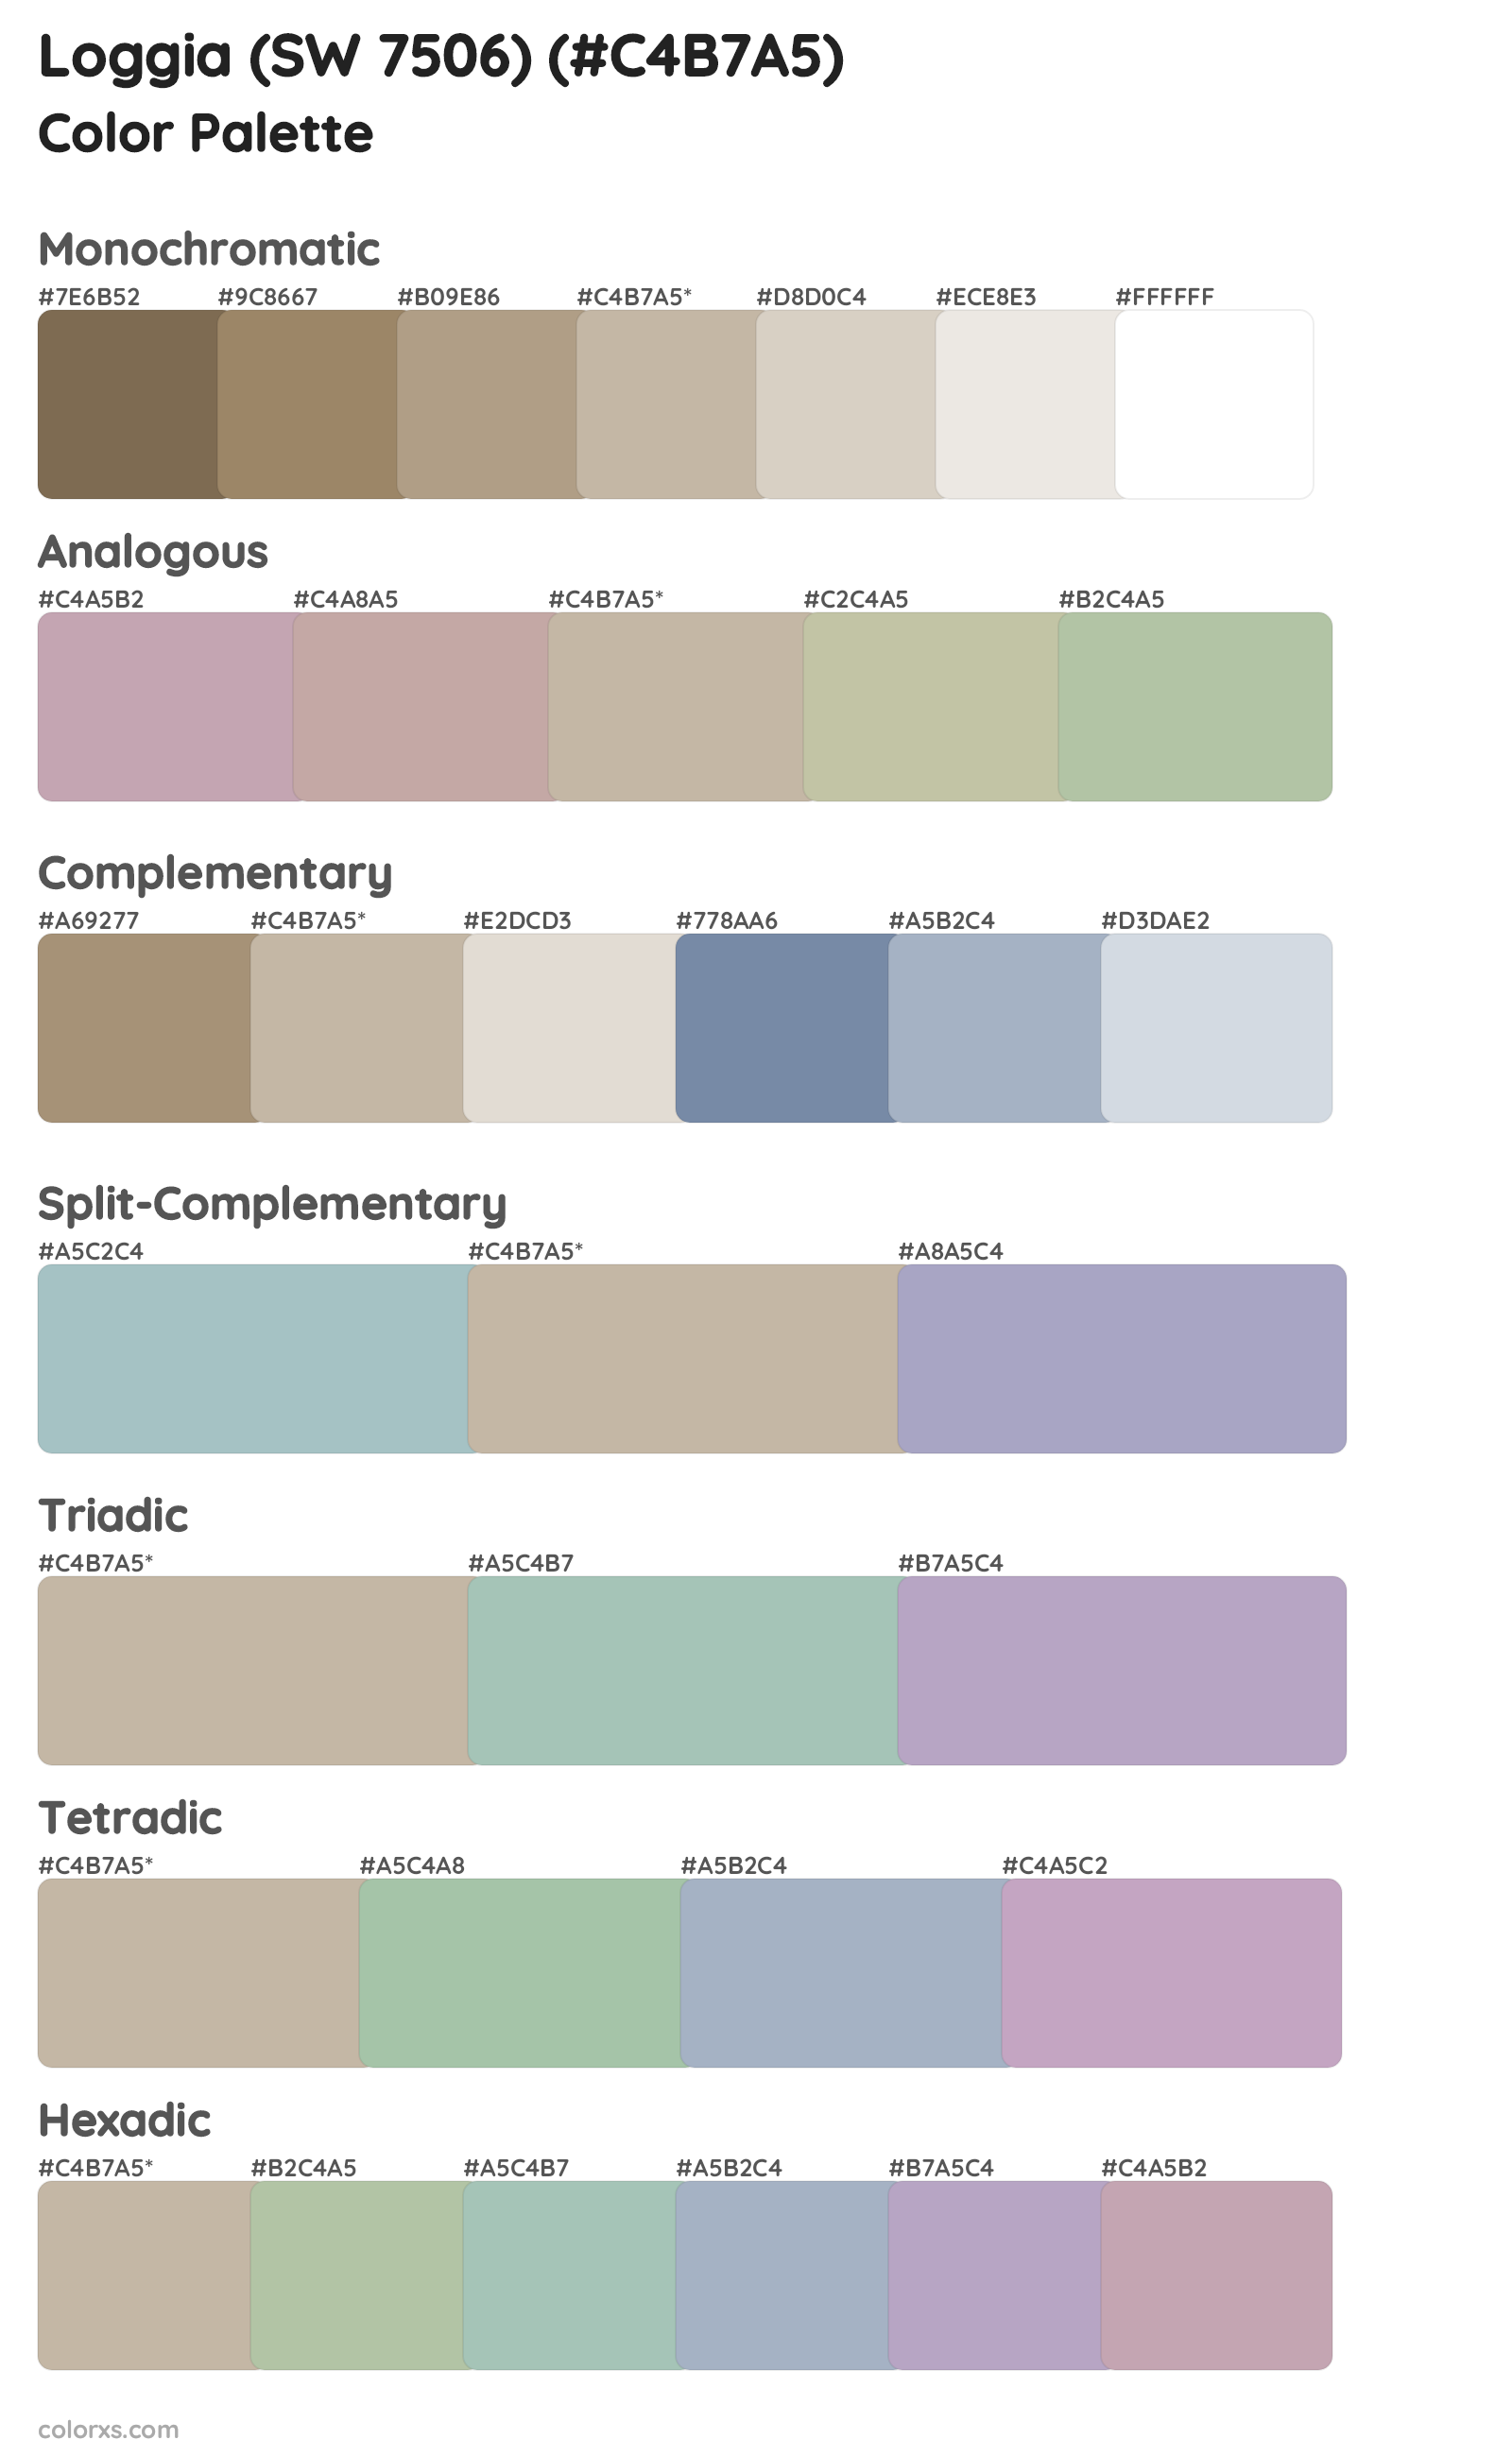 Loggia (SW 7506) Color Scheme Palettes